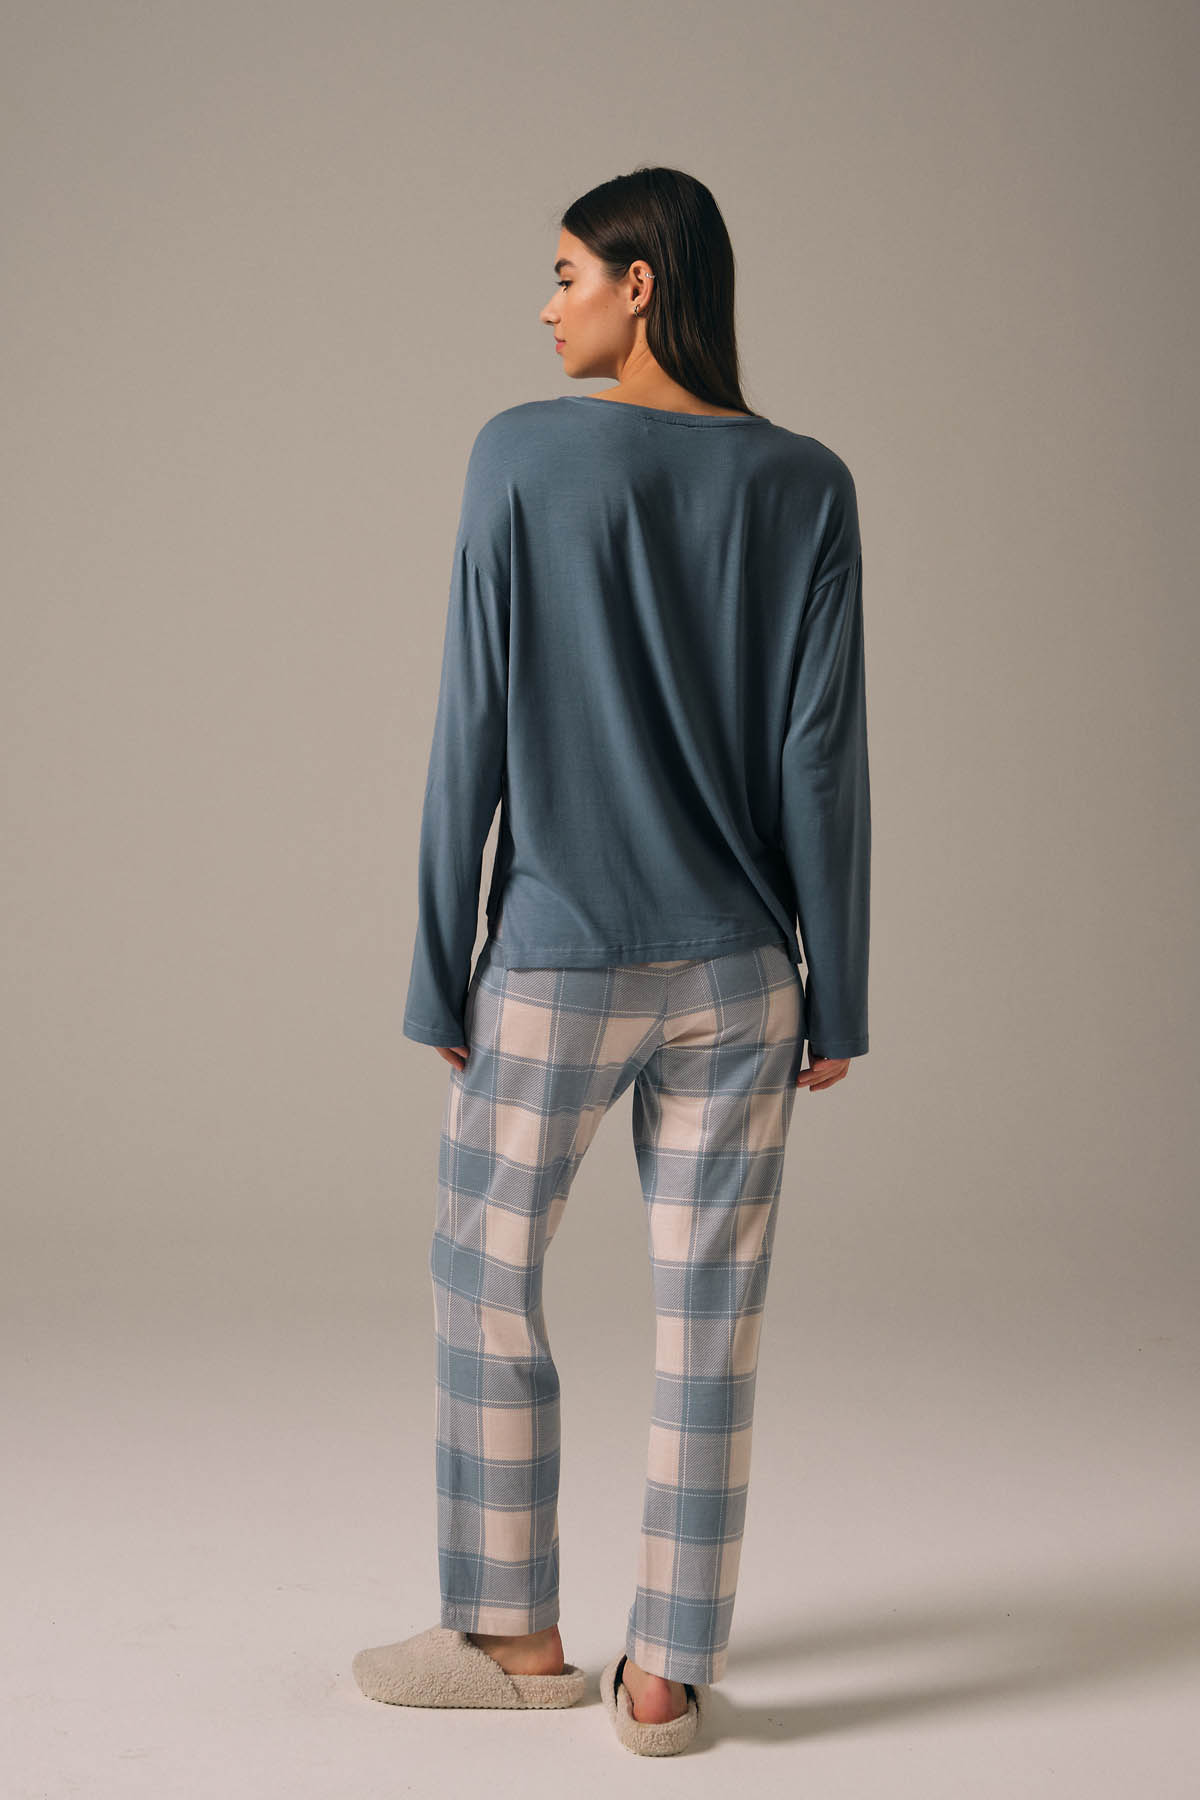 Kadın Modal Karışımlı Pamuklu Uzun Pijama Takımı